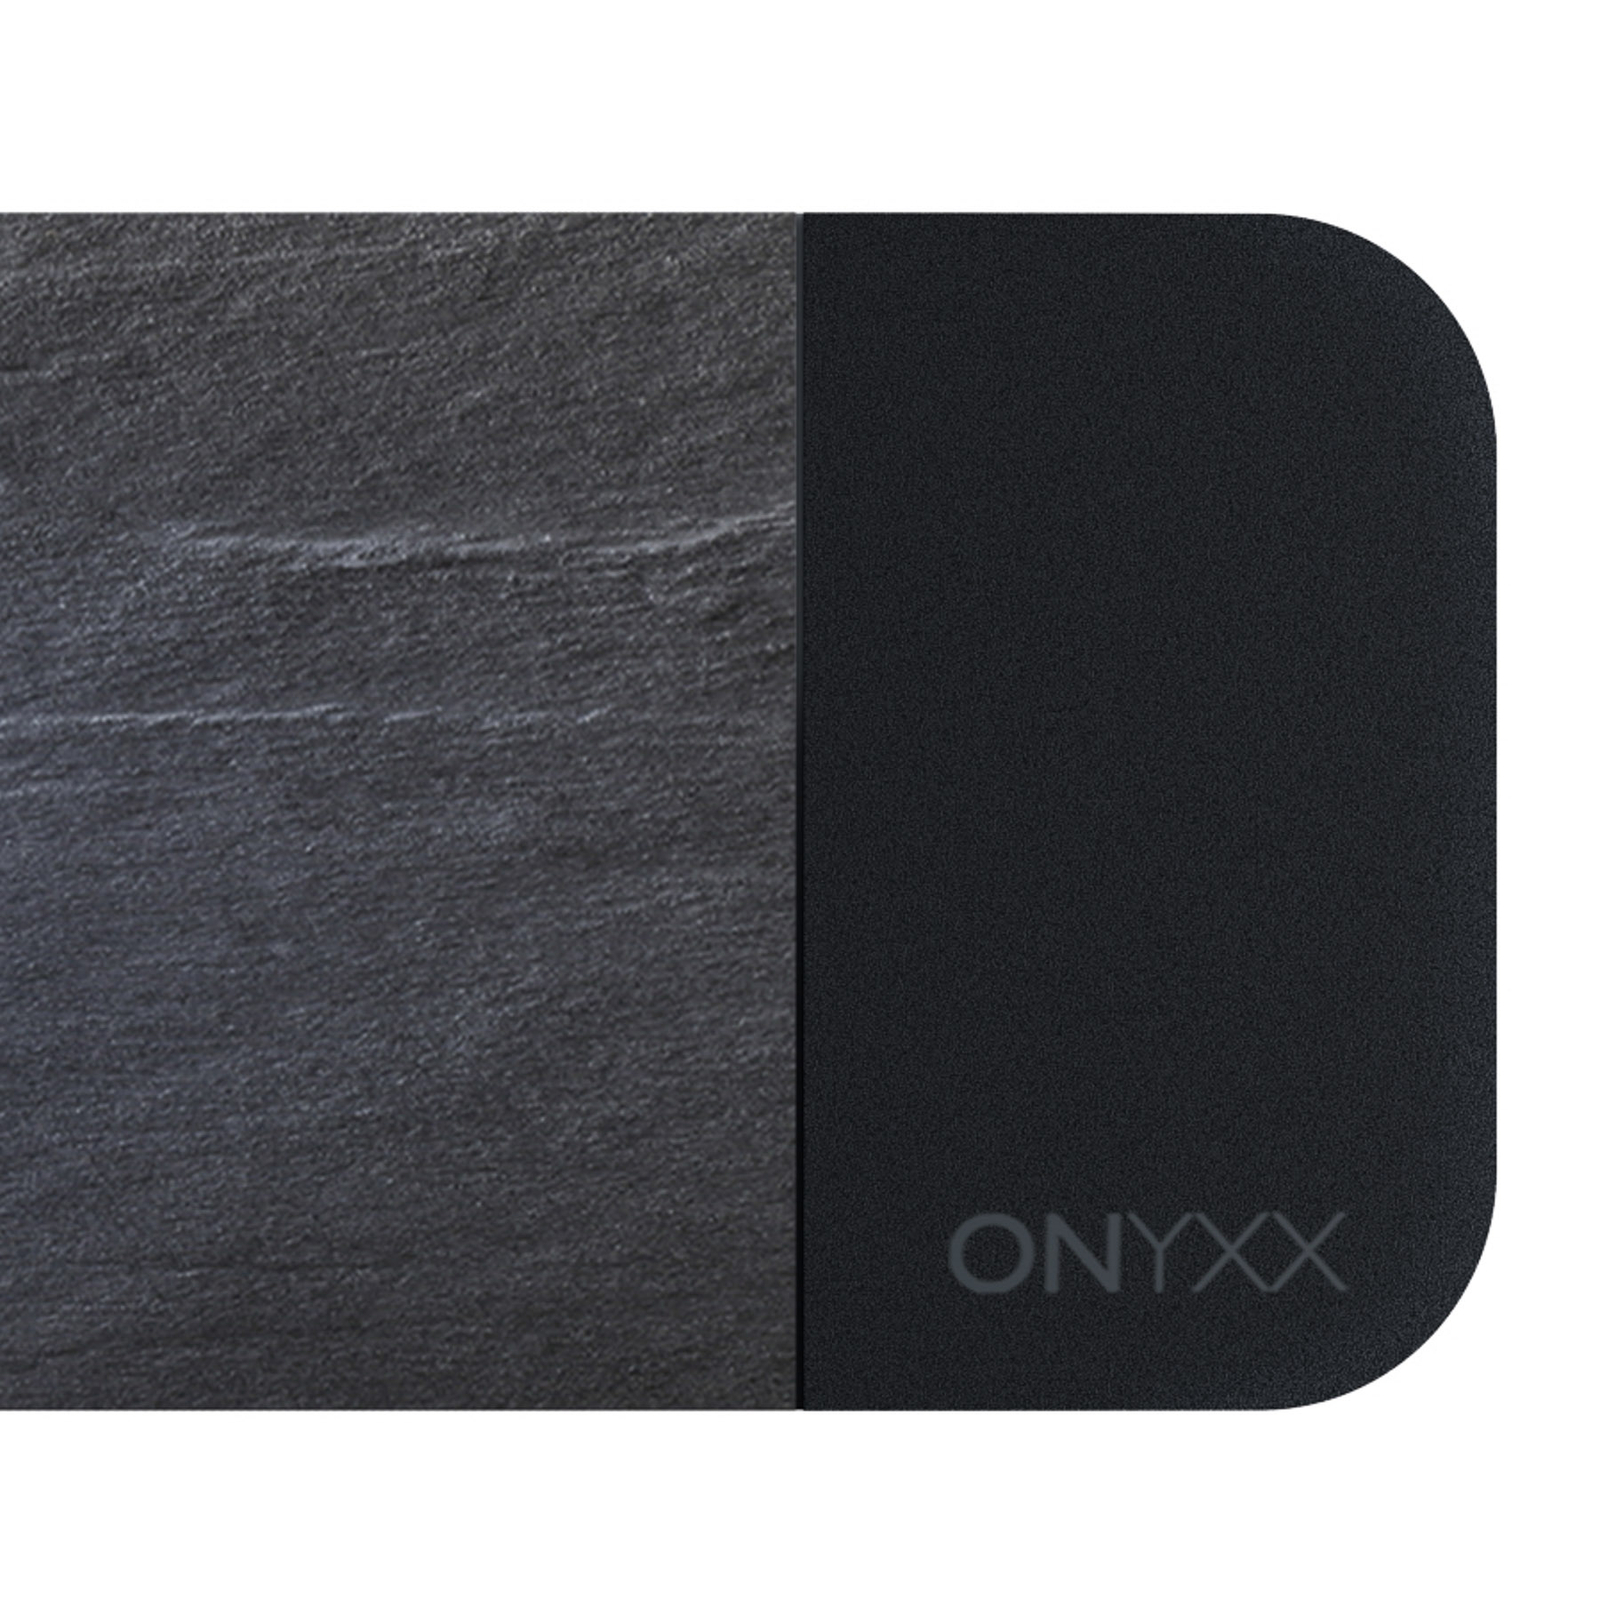 GRIMMEISEN Onyxx Linea Pro Pendel Schiefer/schwarz